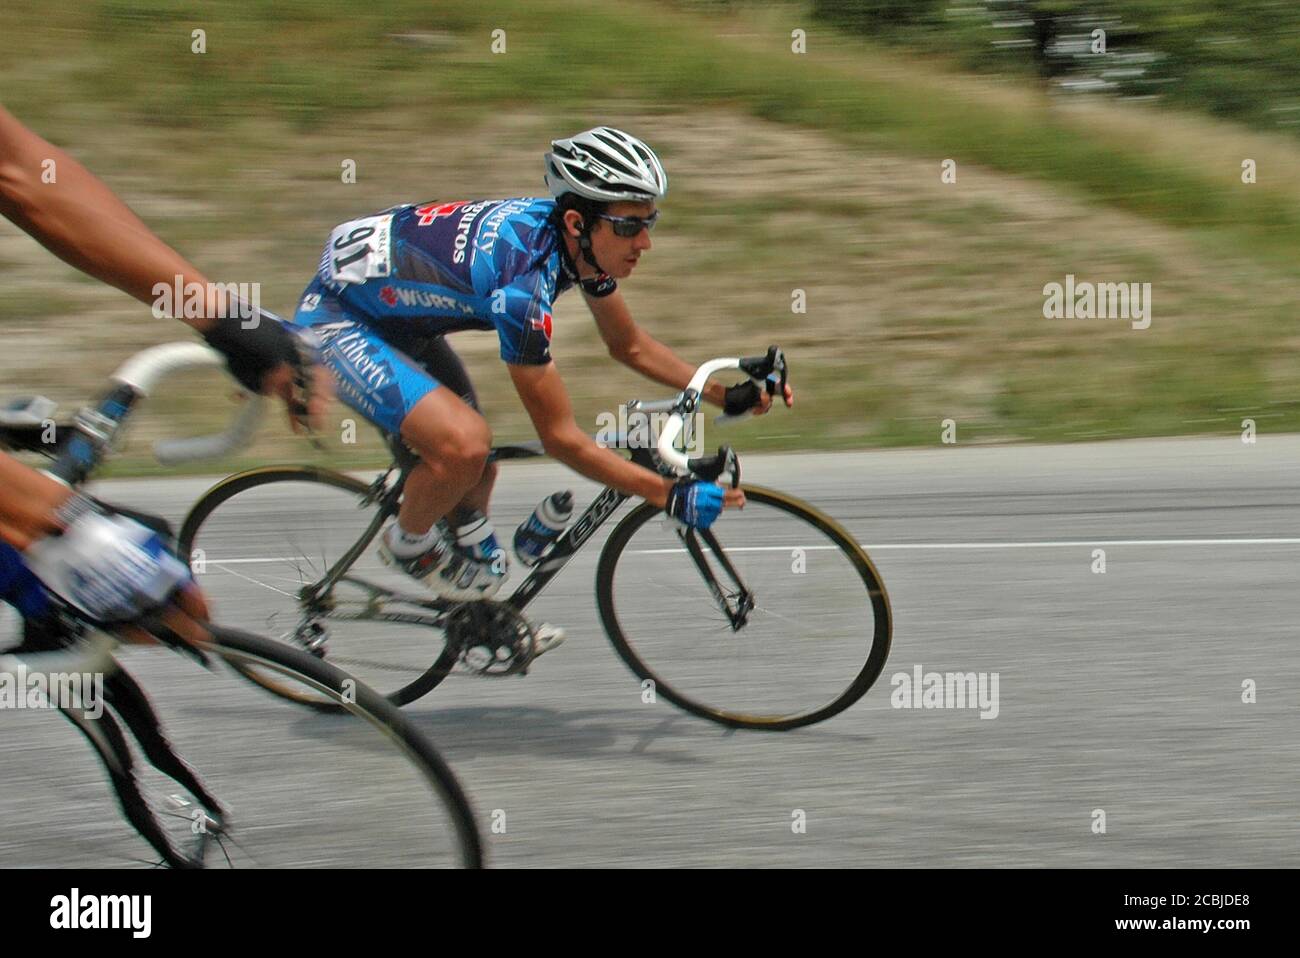 Roberto Heras, il ciclista stradale professionista spagnolo che gareggia nel Tour de France 2005 - tappa 11: Courchevel - Briançon. Foto Stock